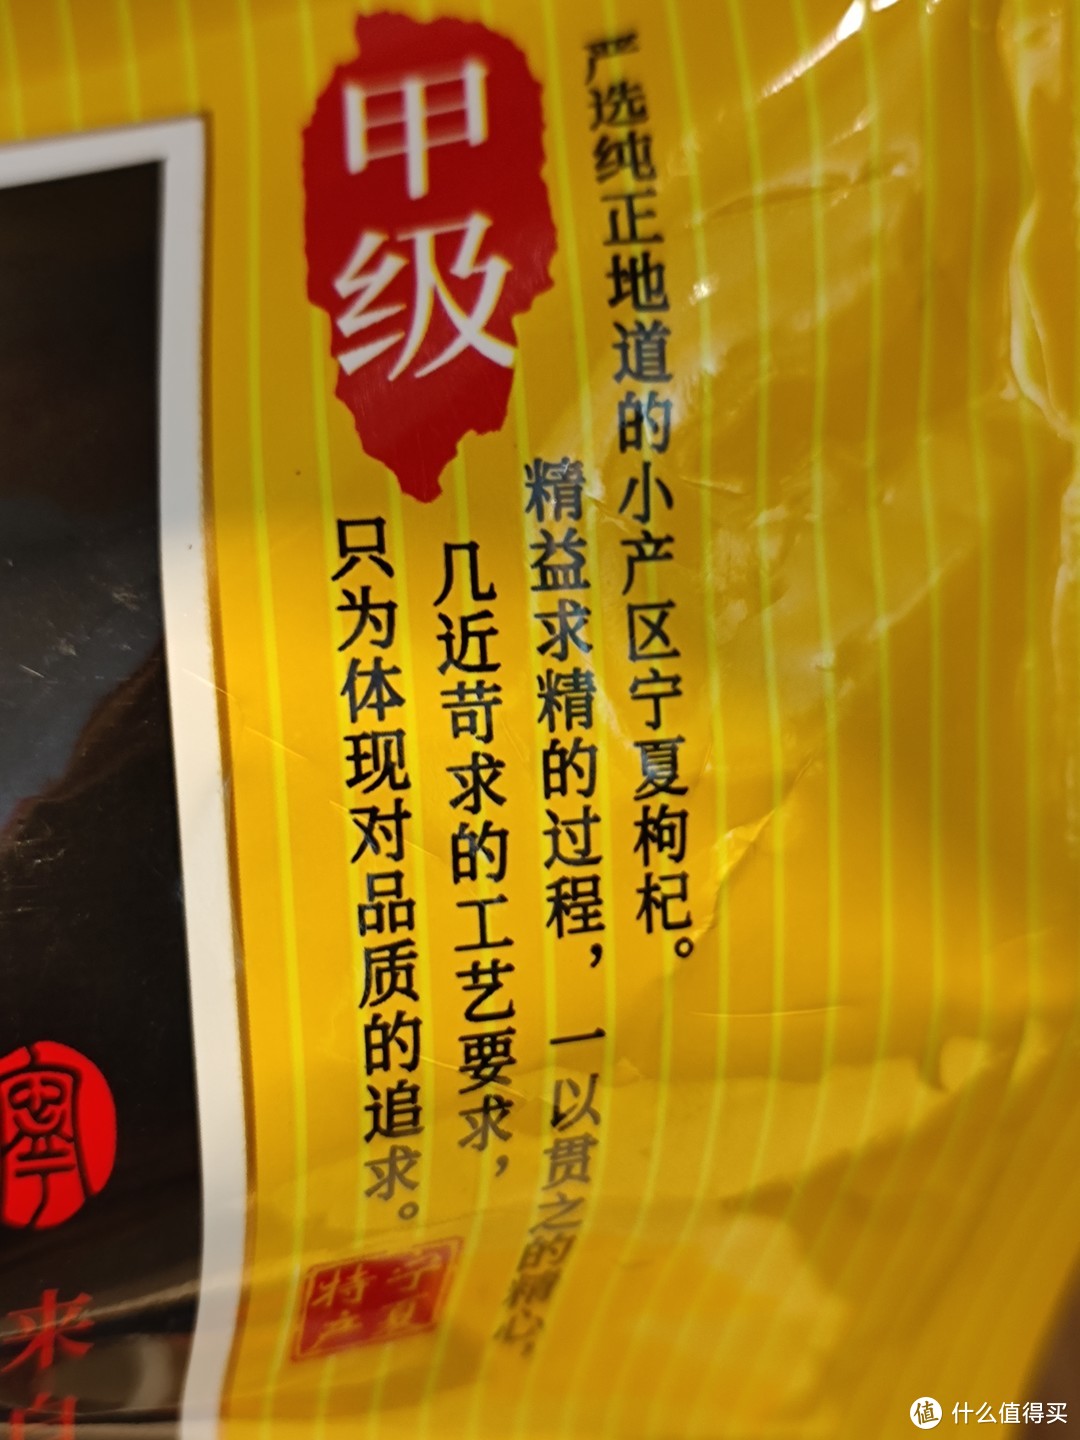 宁夏枸杞是一种值得推荐和品尝的特色食材